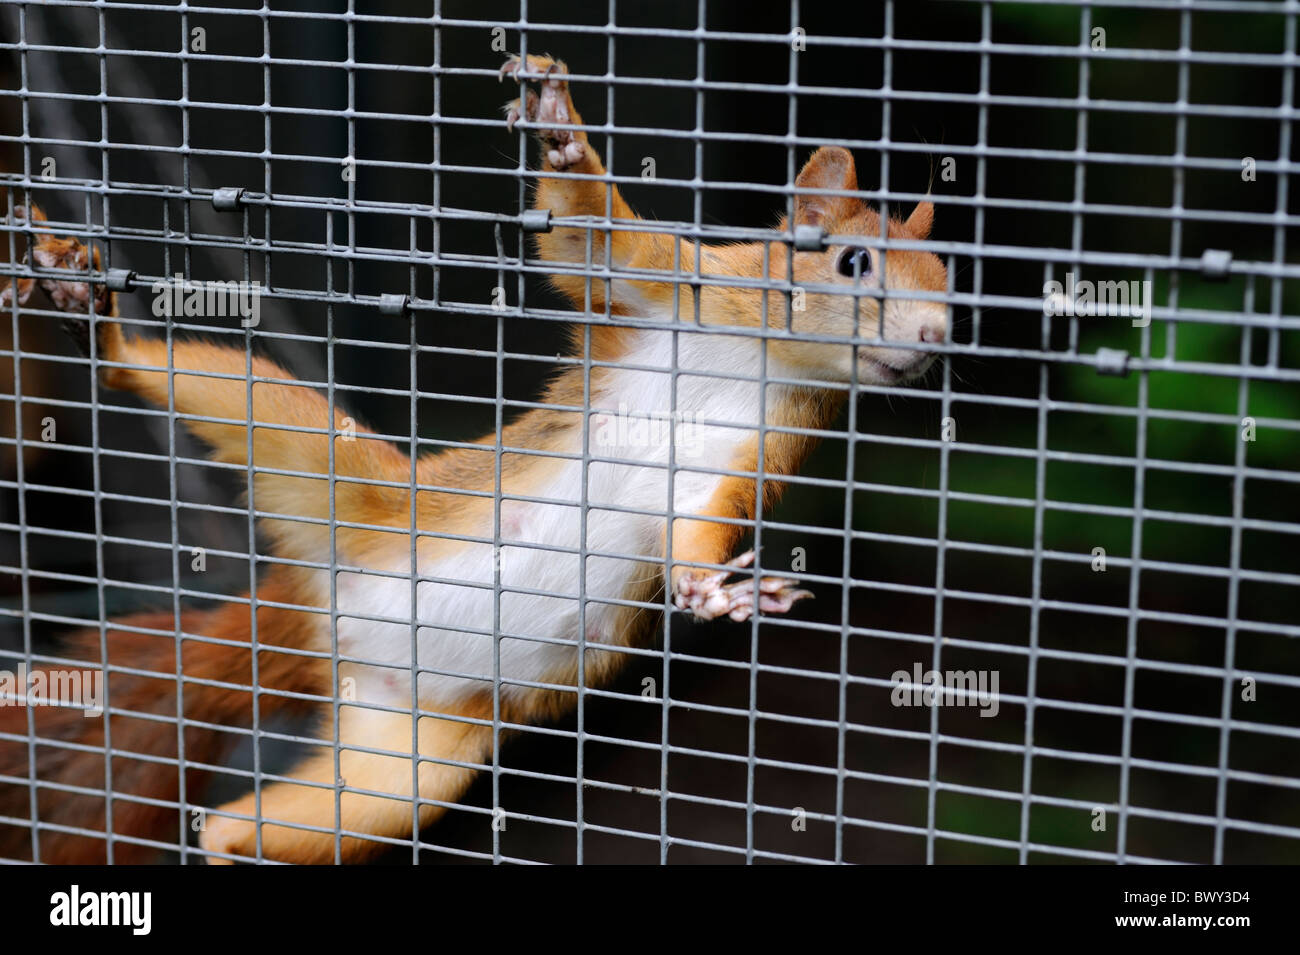 A gabbia di scoiattolo rosso Sciurus vulgaris - parte di un programma di riproduzione in cattività, Yorkshire Dales National Park, Regno Unito. Foto Stock